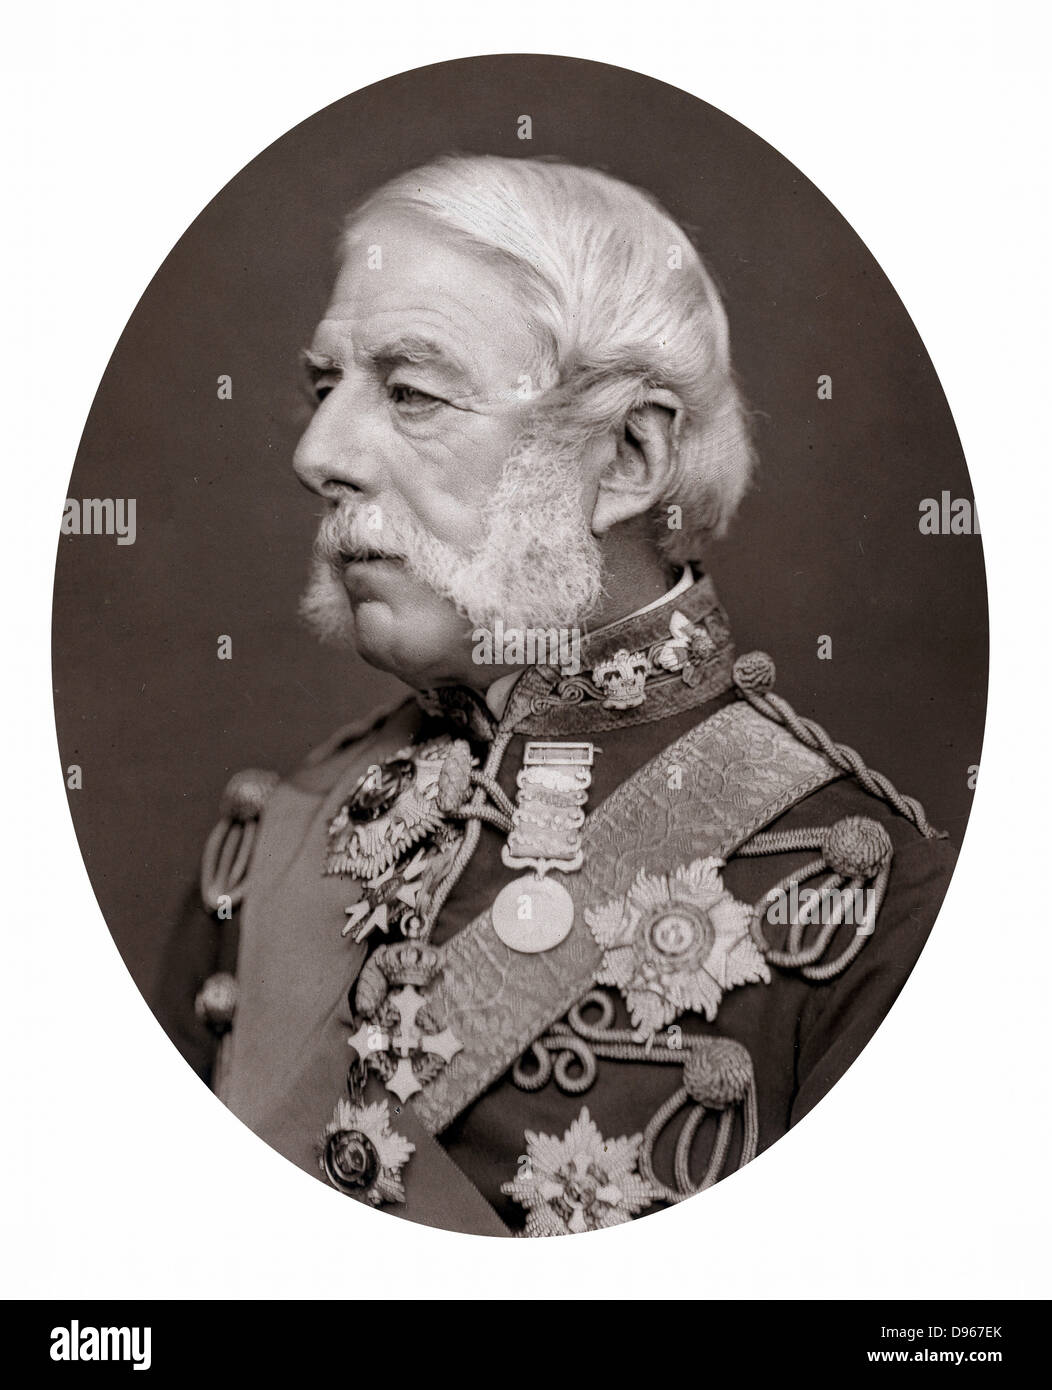 Richard, Airey Barone Airey (1803-1881) soldato inglese; Intendente generale all'esercito di Crimea 1854-1855; Governatore di Gibilterra 1865-1870. Fotografia pubblicata 1875. Woodburytype Foto Stock